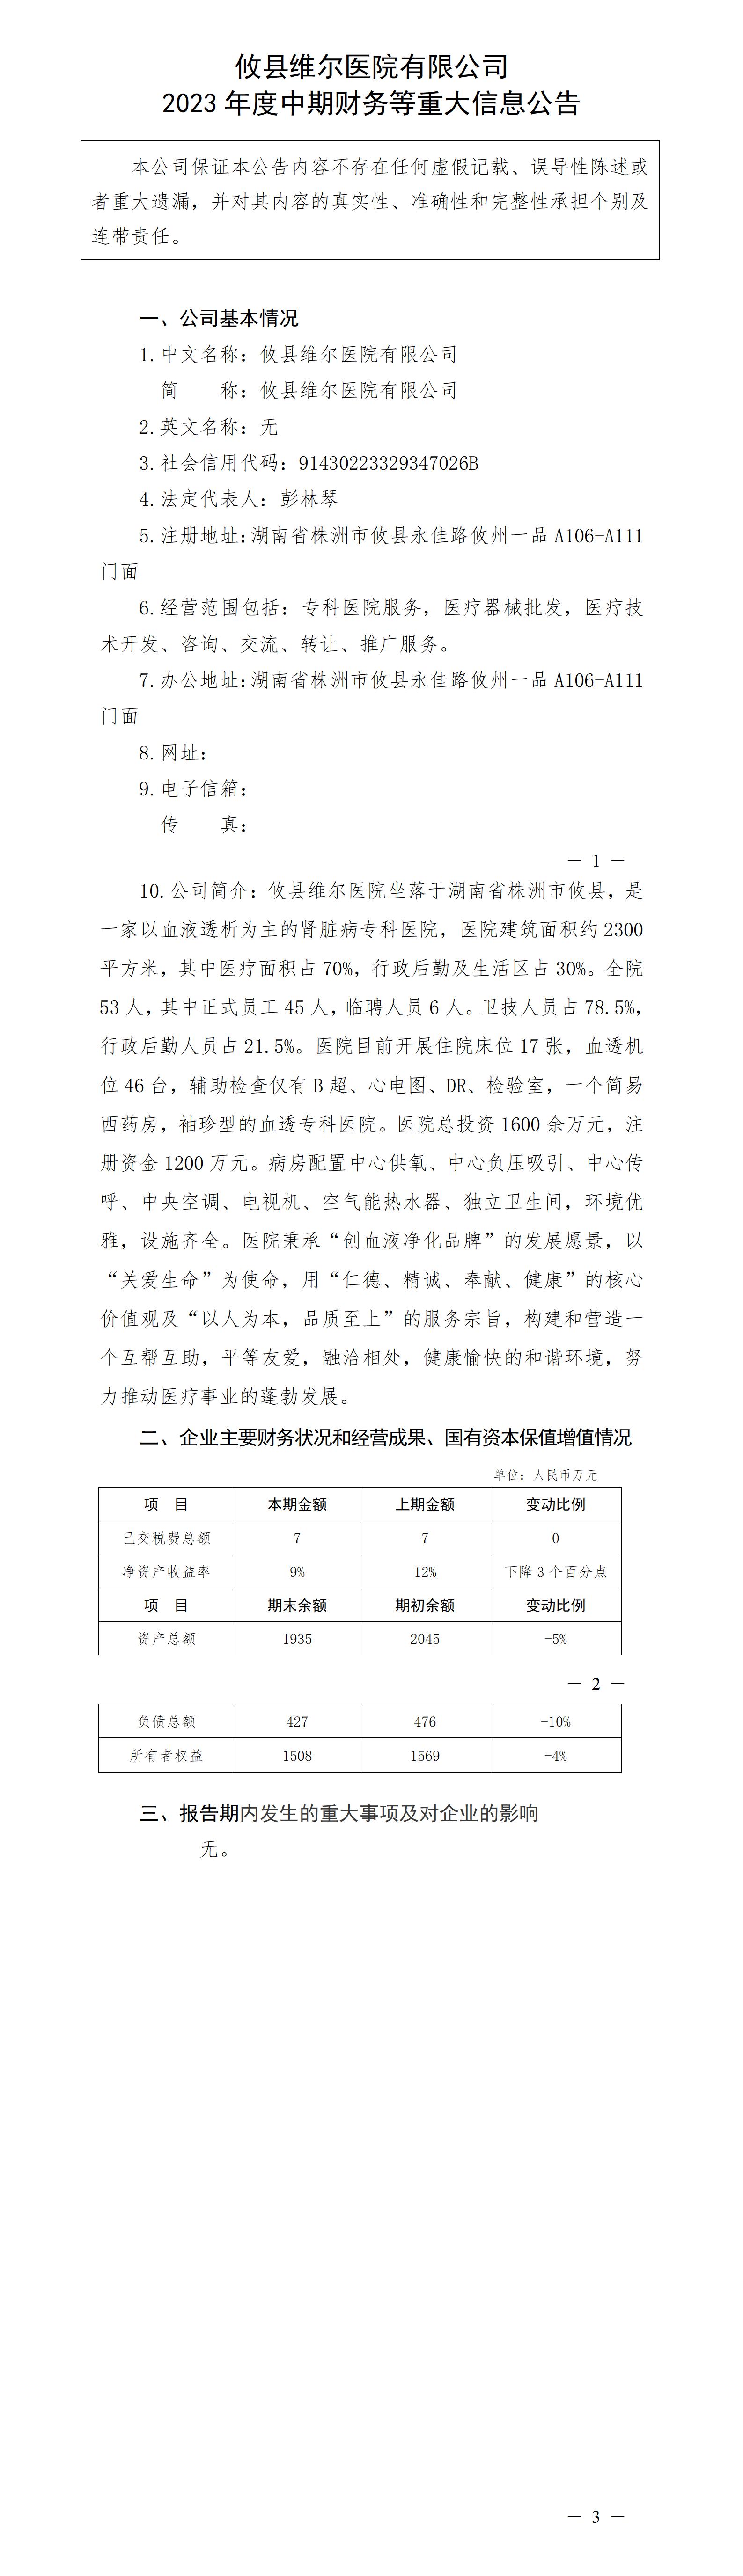 攸县维尔医院有限公司2023年度中期财务等重大信息公告_01.jpg